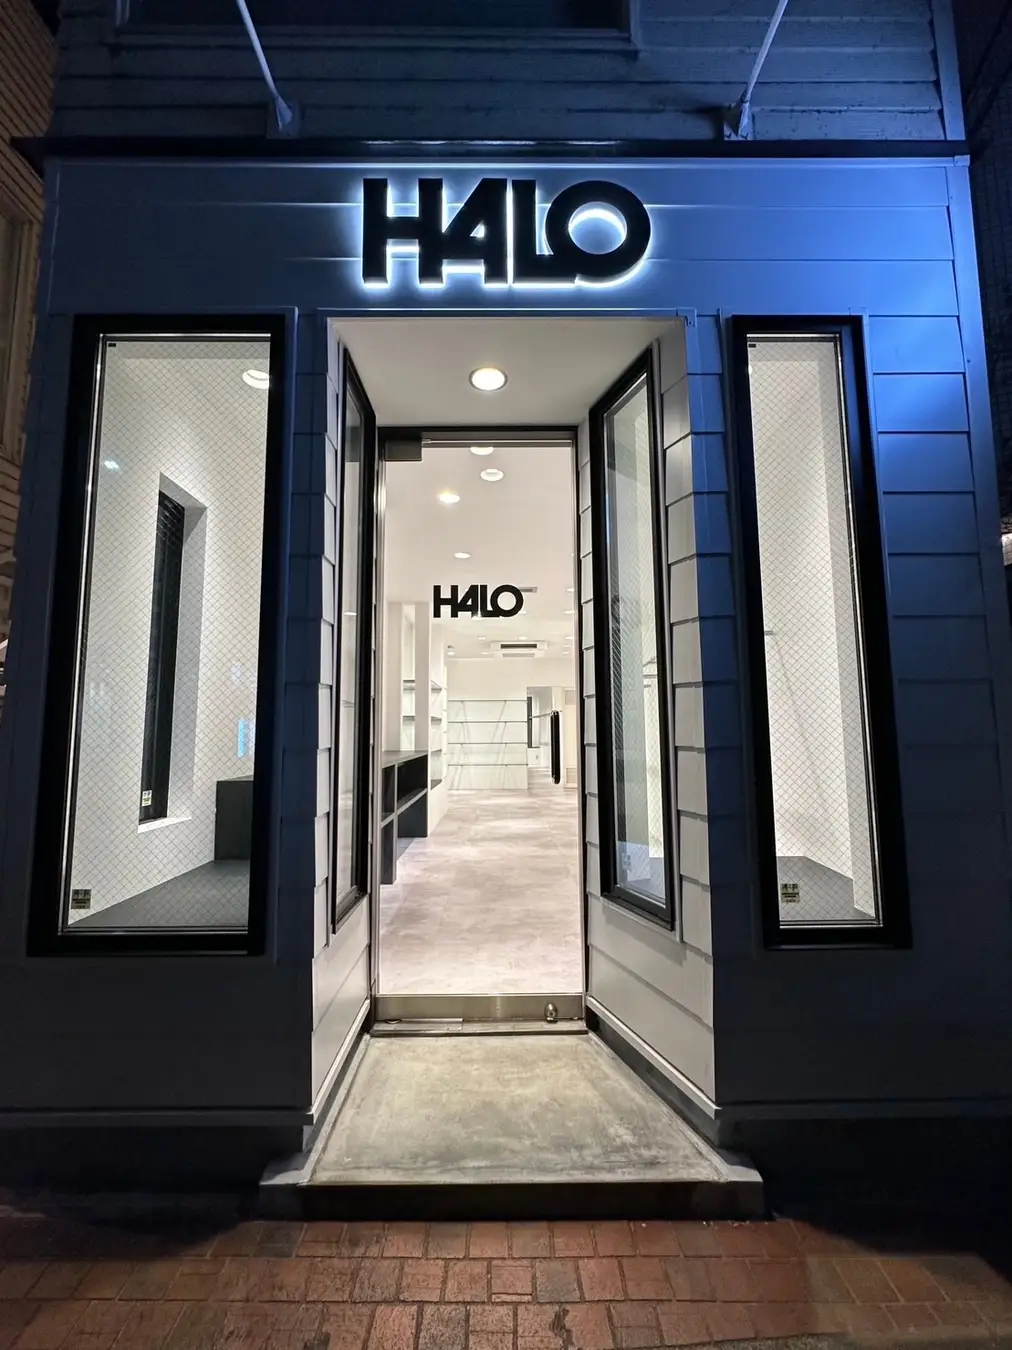 【新店舗】各国のストリートウェアブランドを展開するセレクトショップ「H4LO」第一号店が2023年4月15日にグランドオープン。